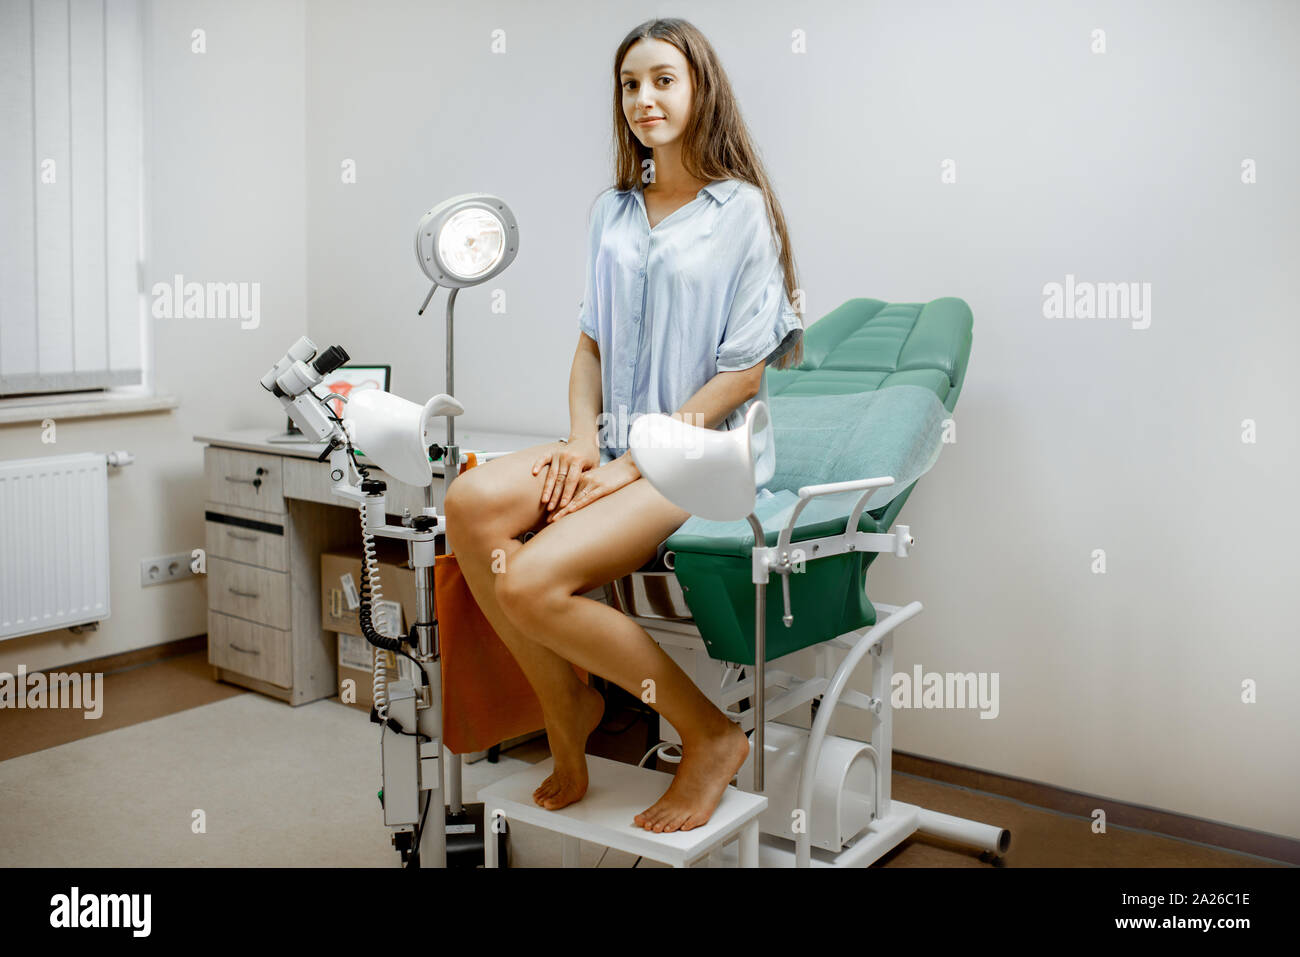 Frau sitzt auf dem gynäkologischen Stuhl, bevor Sie eine ärztliche  Untersuchung durch einen Gynäkologen im Büro Stockfotografie - Alamy